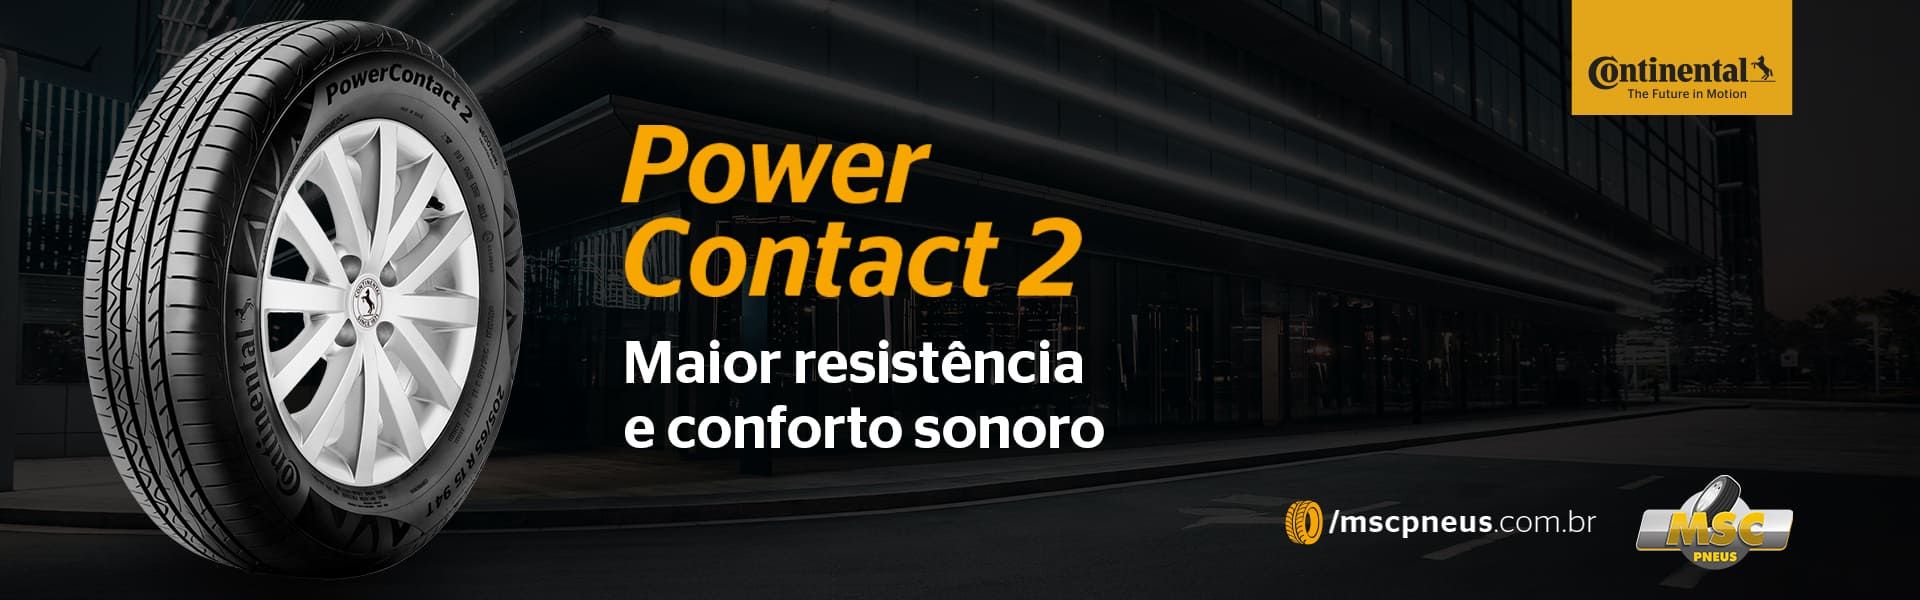 Pneu Continental Power Contact 2 - MSC Pneus